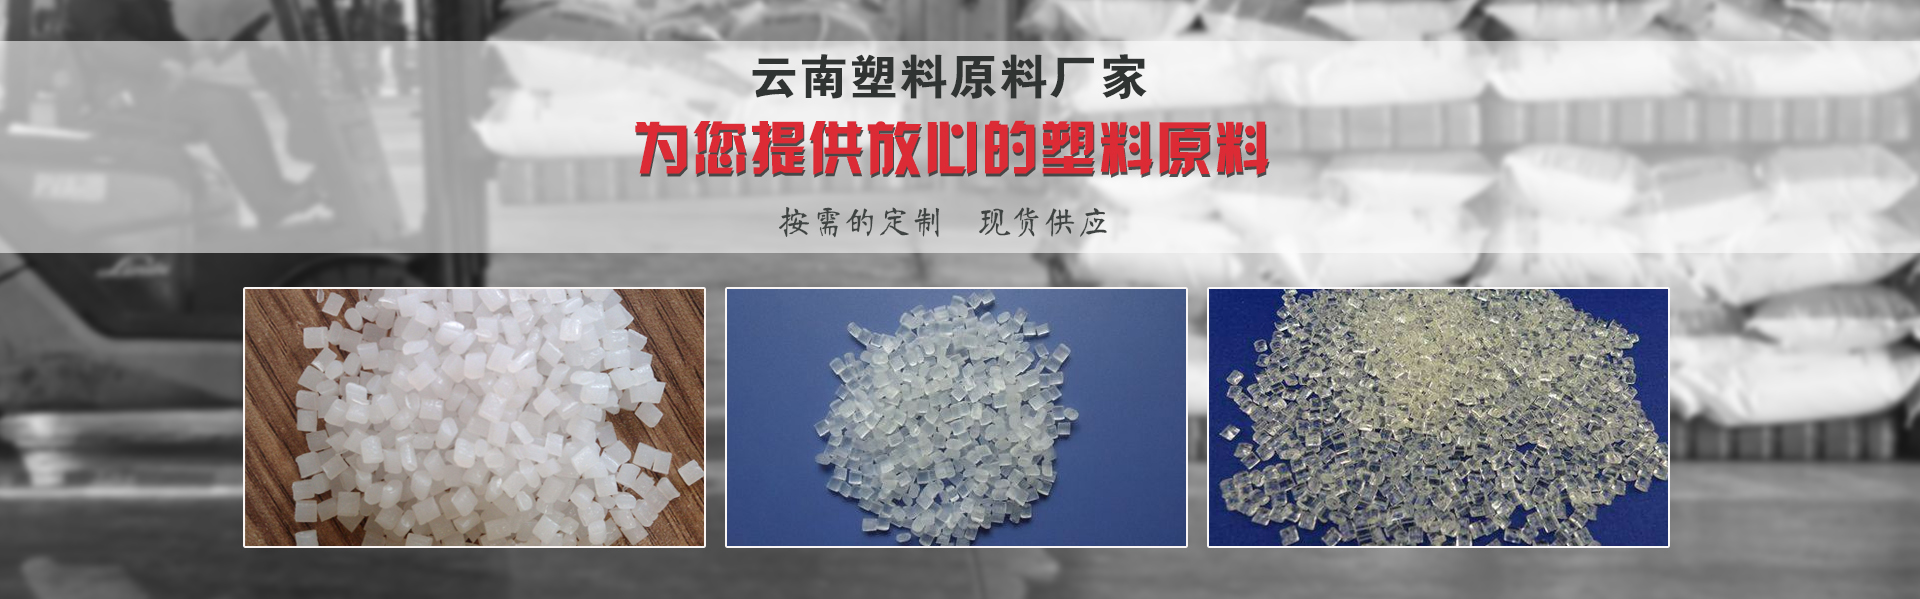 云南塑料原料廠家說:這四種方法可以鑒別塑料的質量